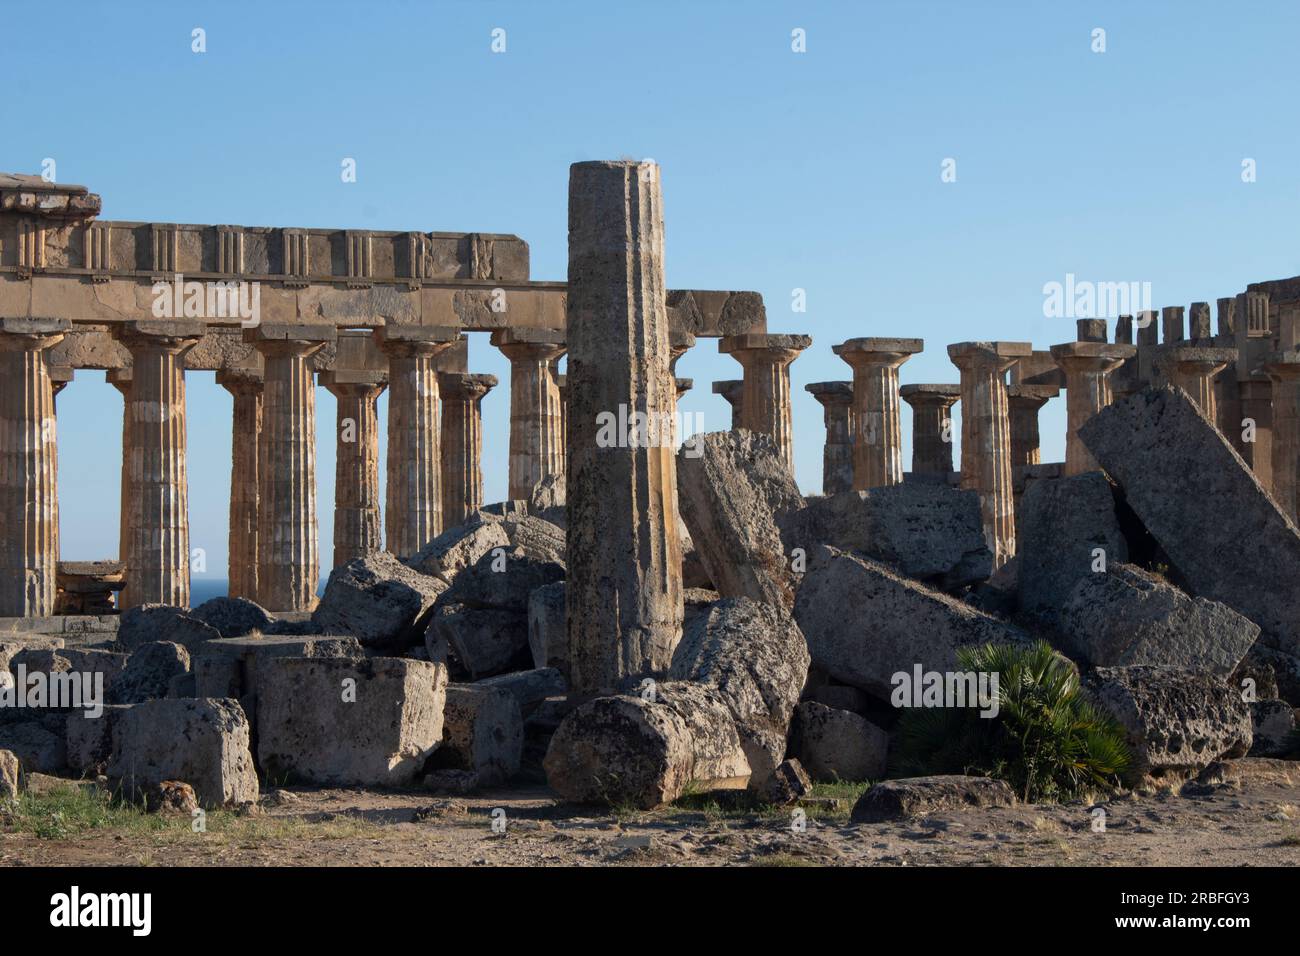 Der rekonstruierte Tempel der Hera - Ruinen eines griechischen Tempels in Selinunte - Selinus - im äußersten Westen Siziliens, Italien Stockfoto